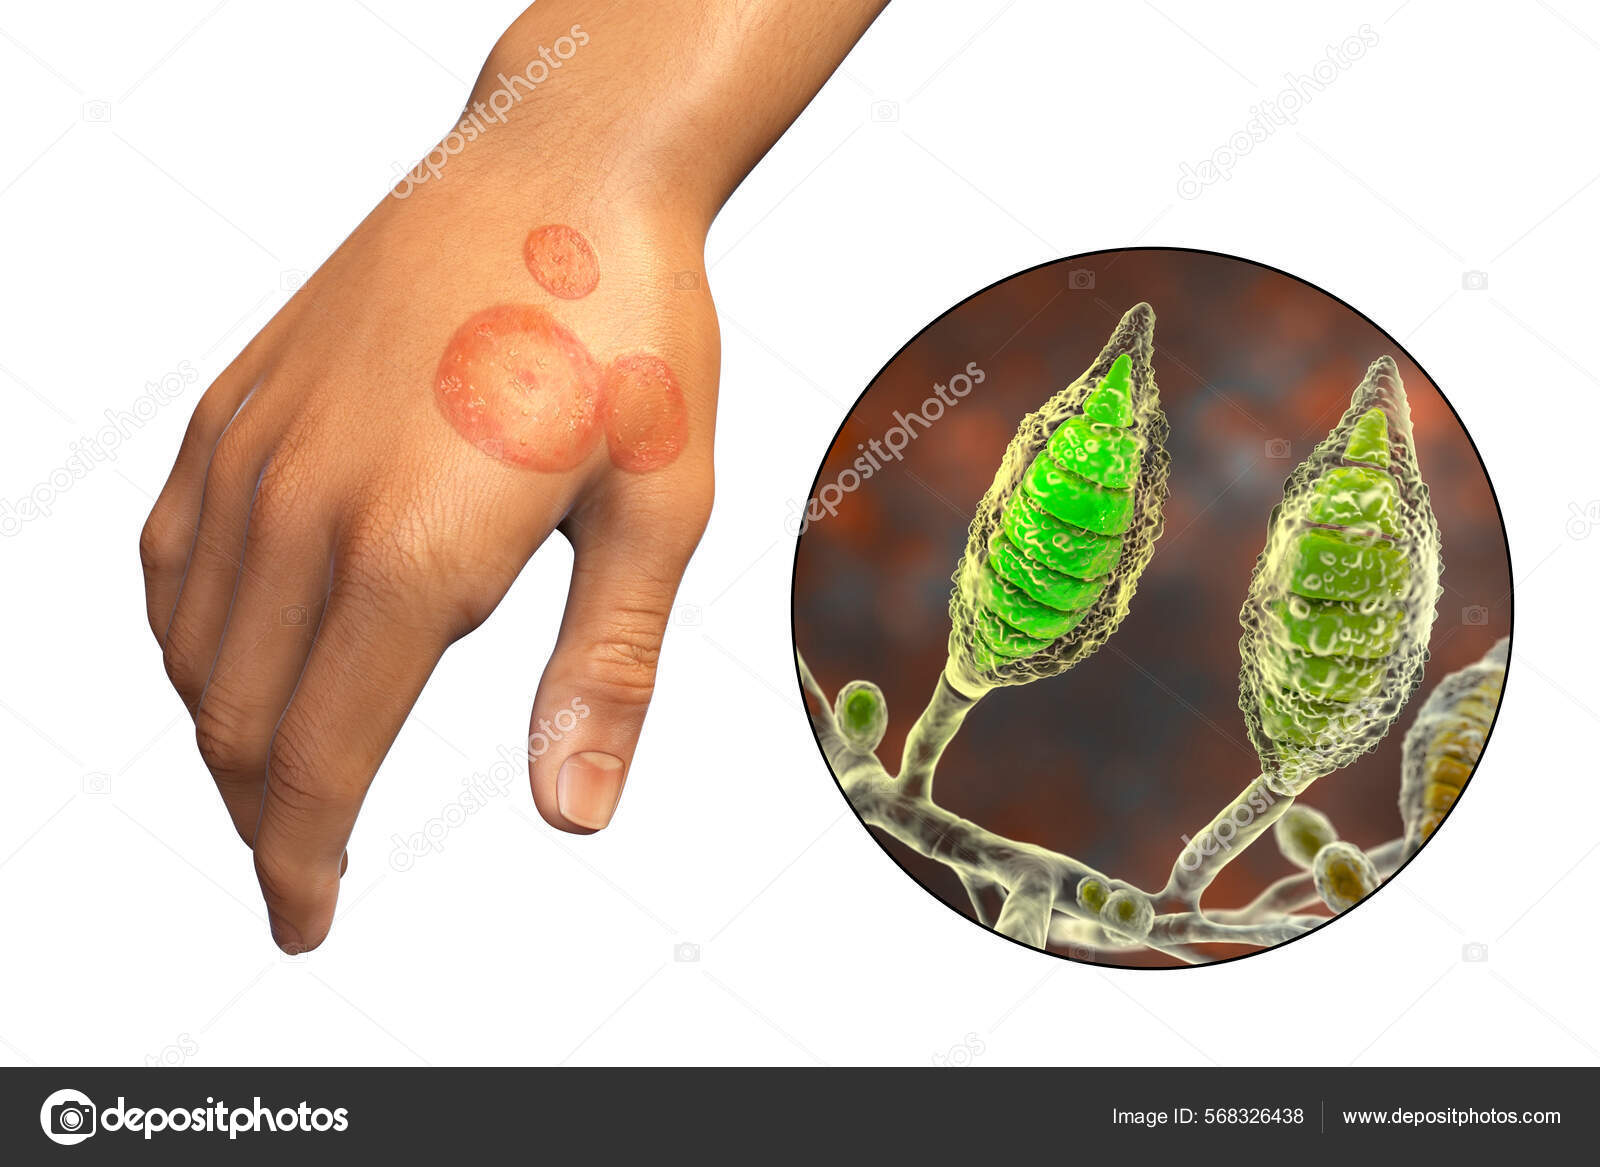 https://st.depositphotos.com/5316818/56832/i/1600/depositphotos_568326438-stock-photo-fungal-infection-man-hand-tinea.jpg